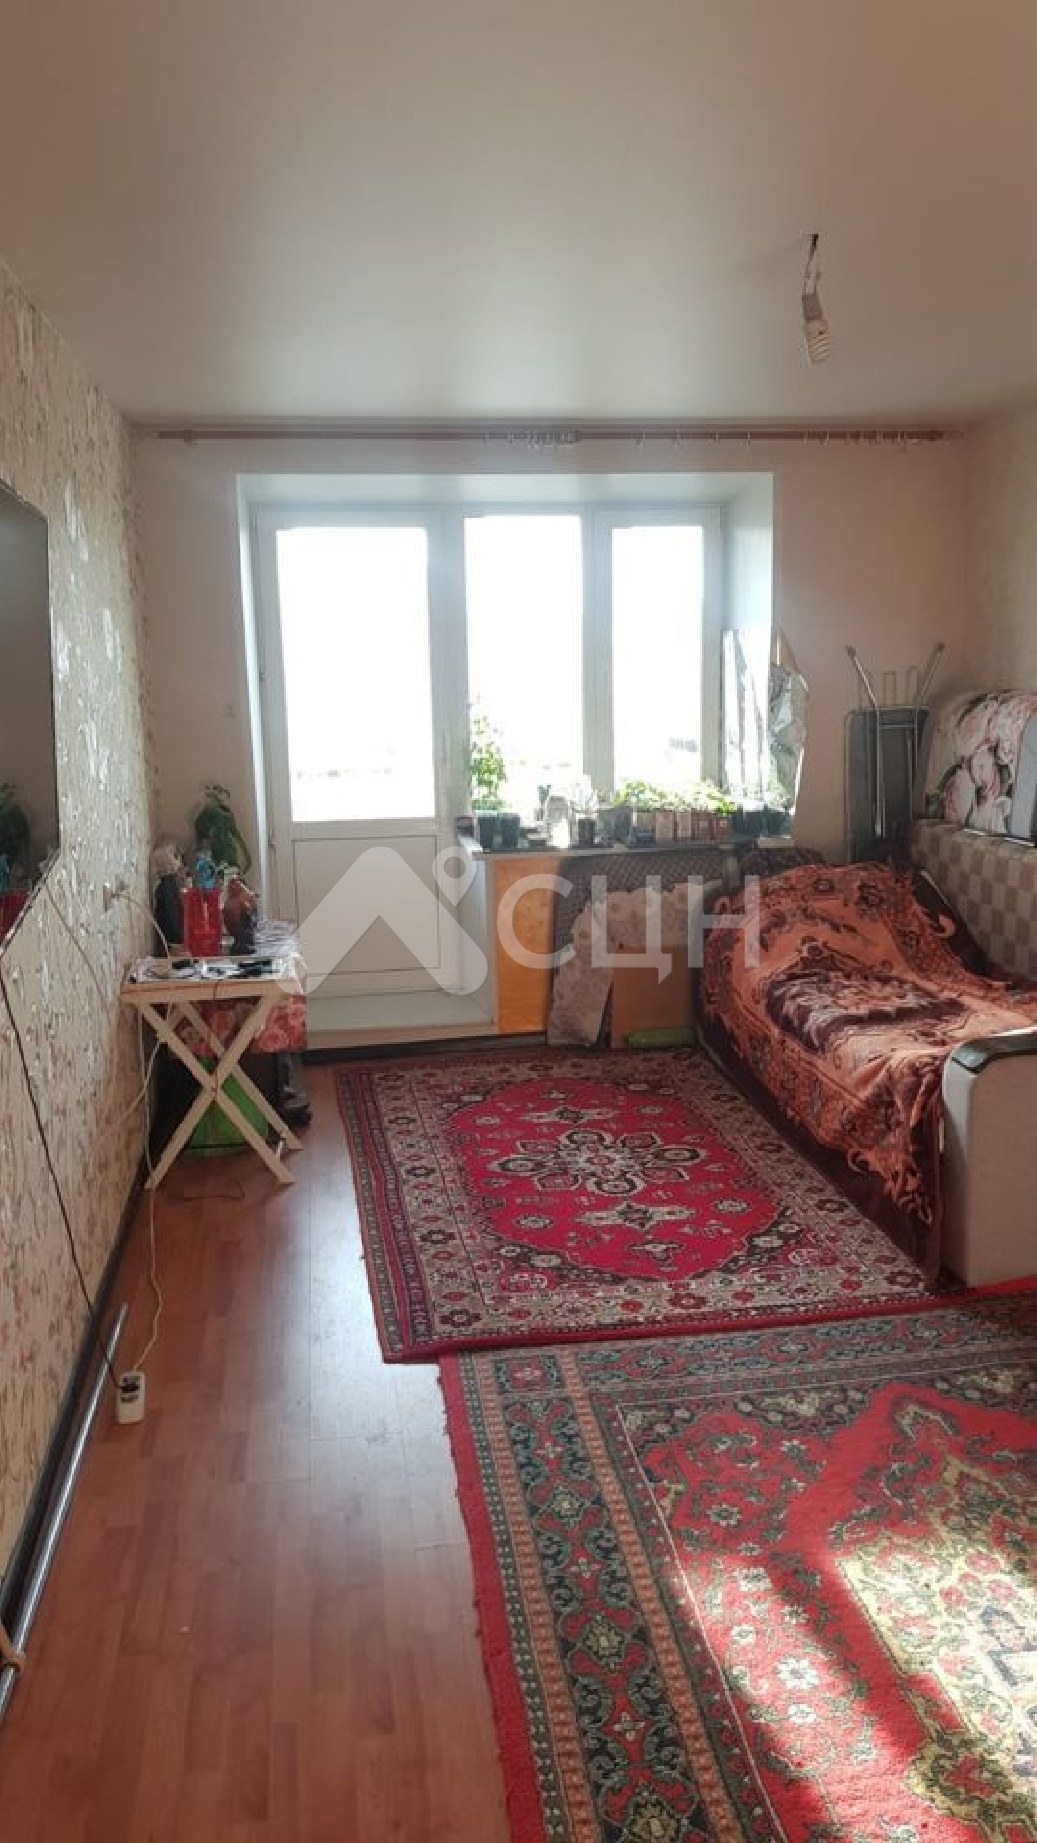 купить дом в сарове
: Г. Саров, улица Курчатова, 19, 2-комн квартира, этаж 5 из 5, продажа.